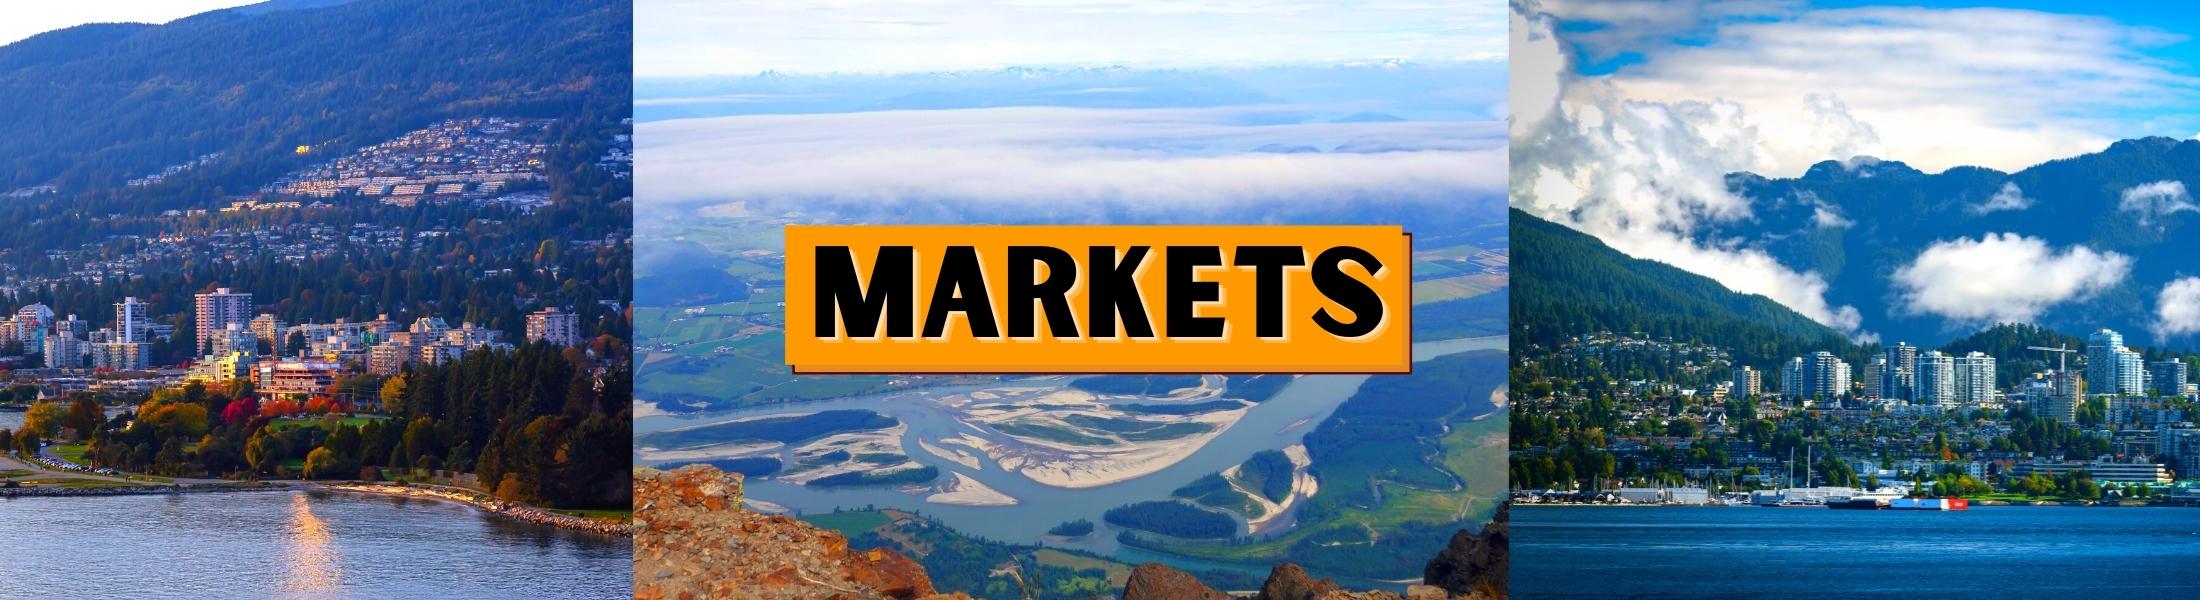 Markets at Coast Valley Markets